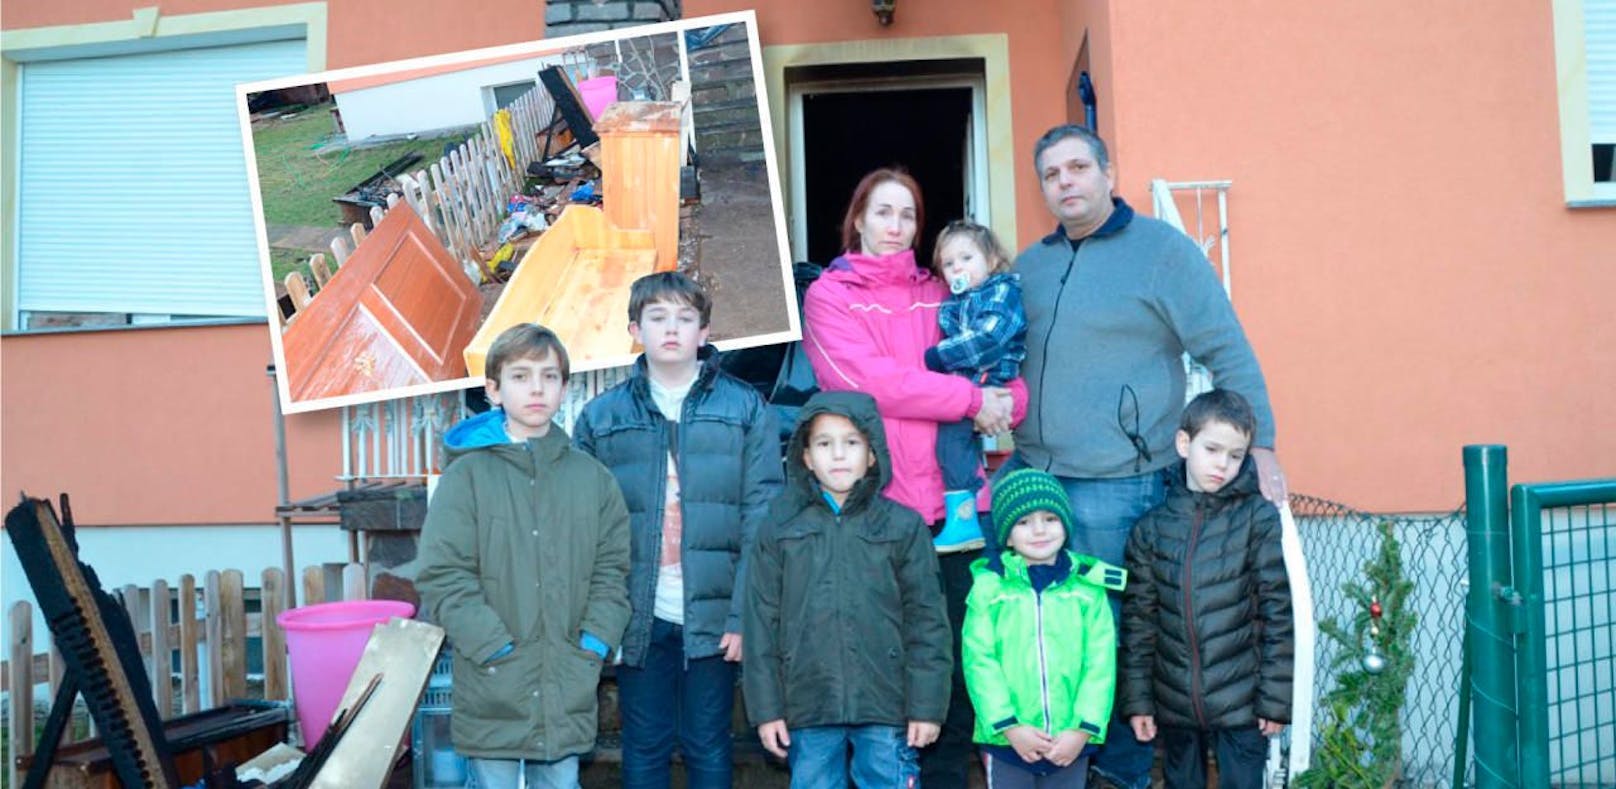 Familie verlor Heim: Haus bis Juni nicht bewohnbar